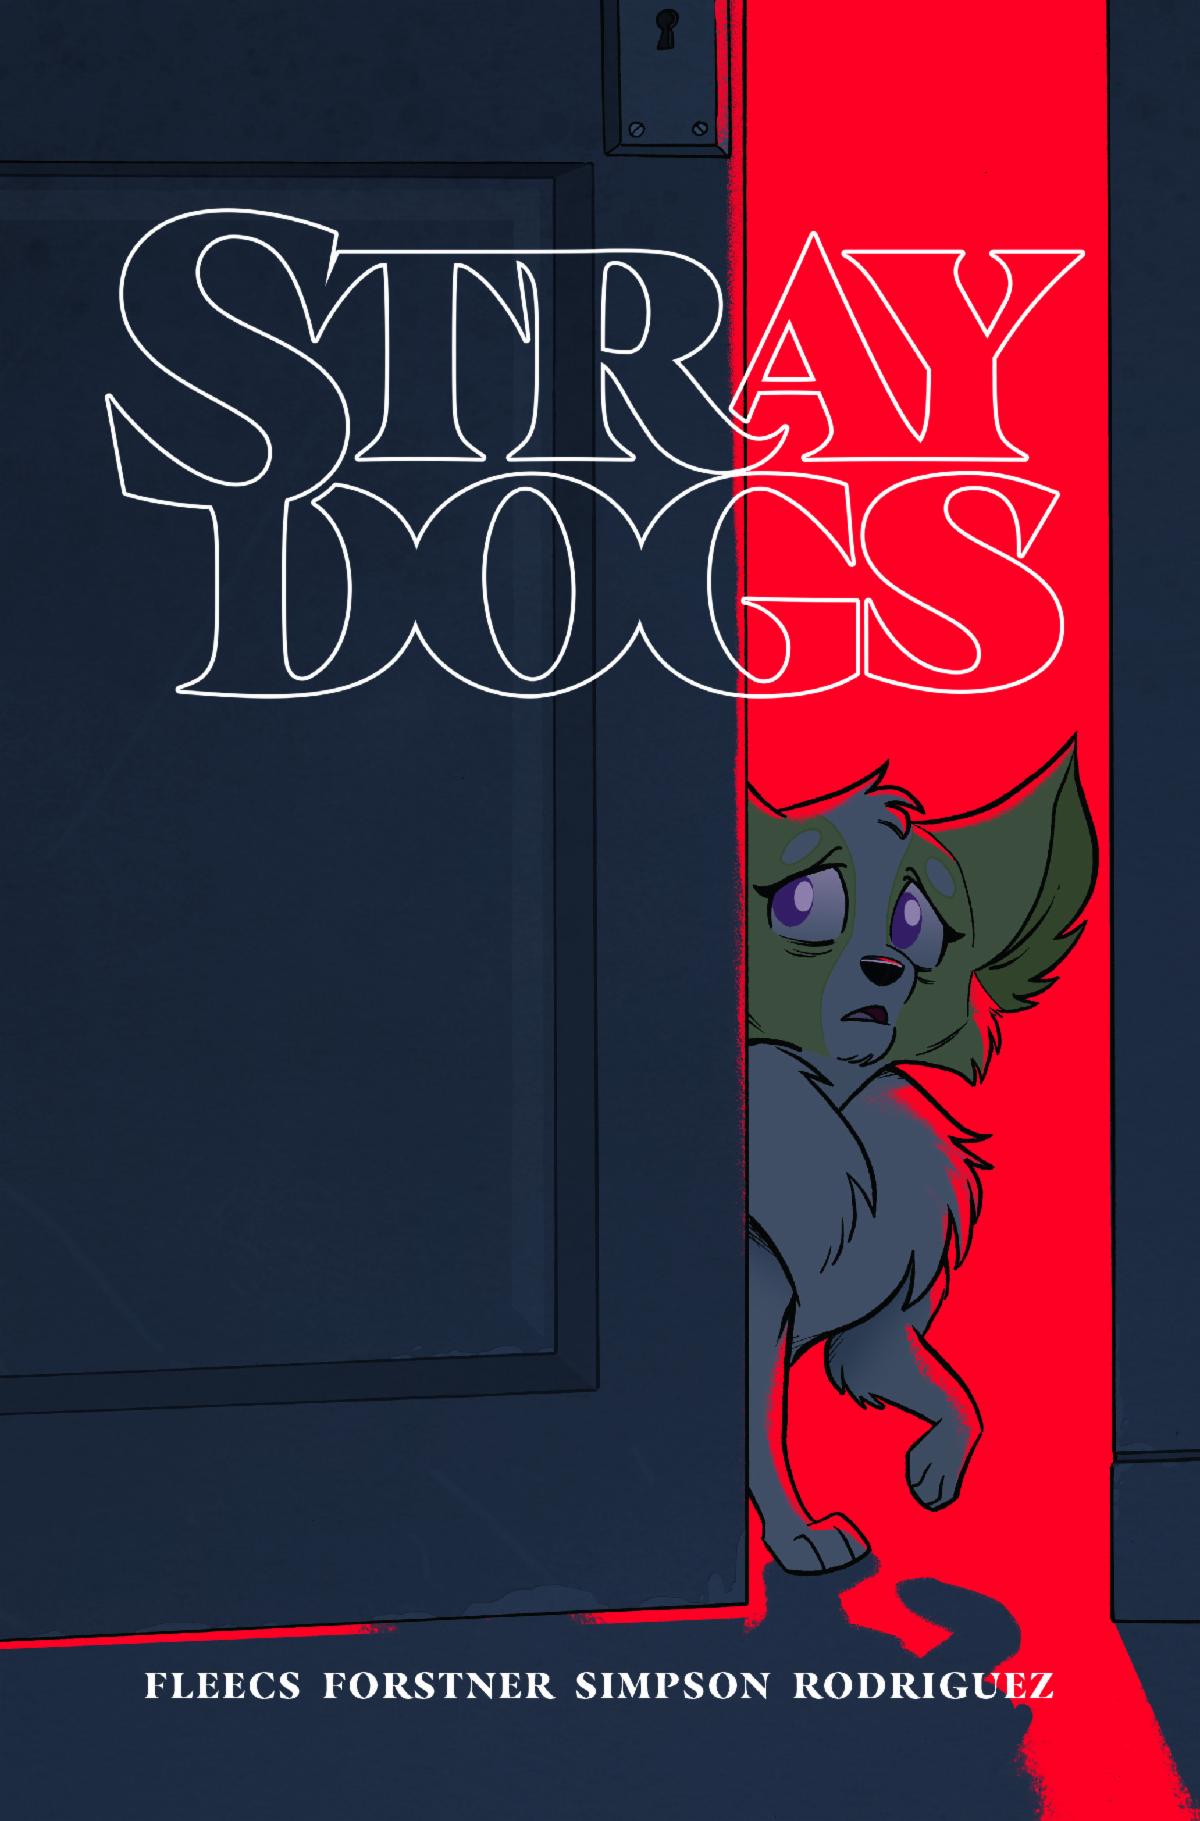 Stray Dogs by Tony Fleecs